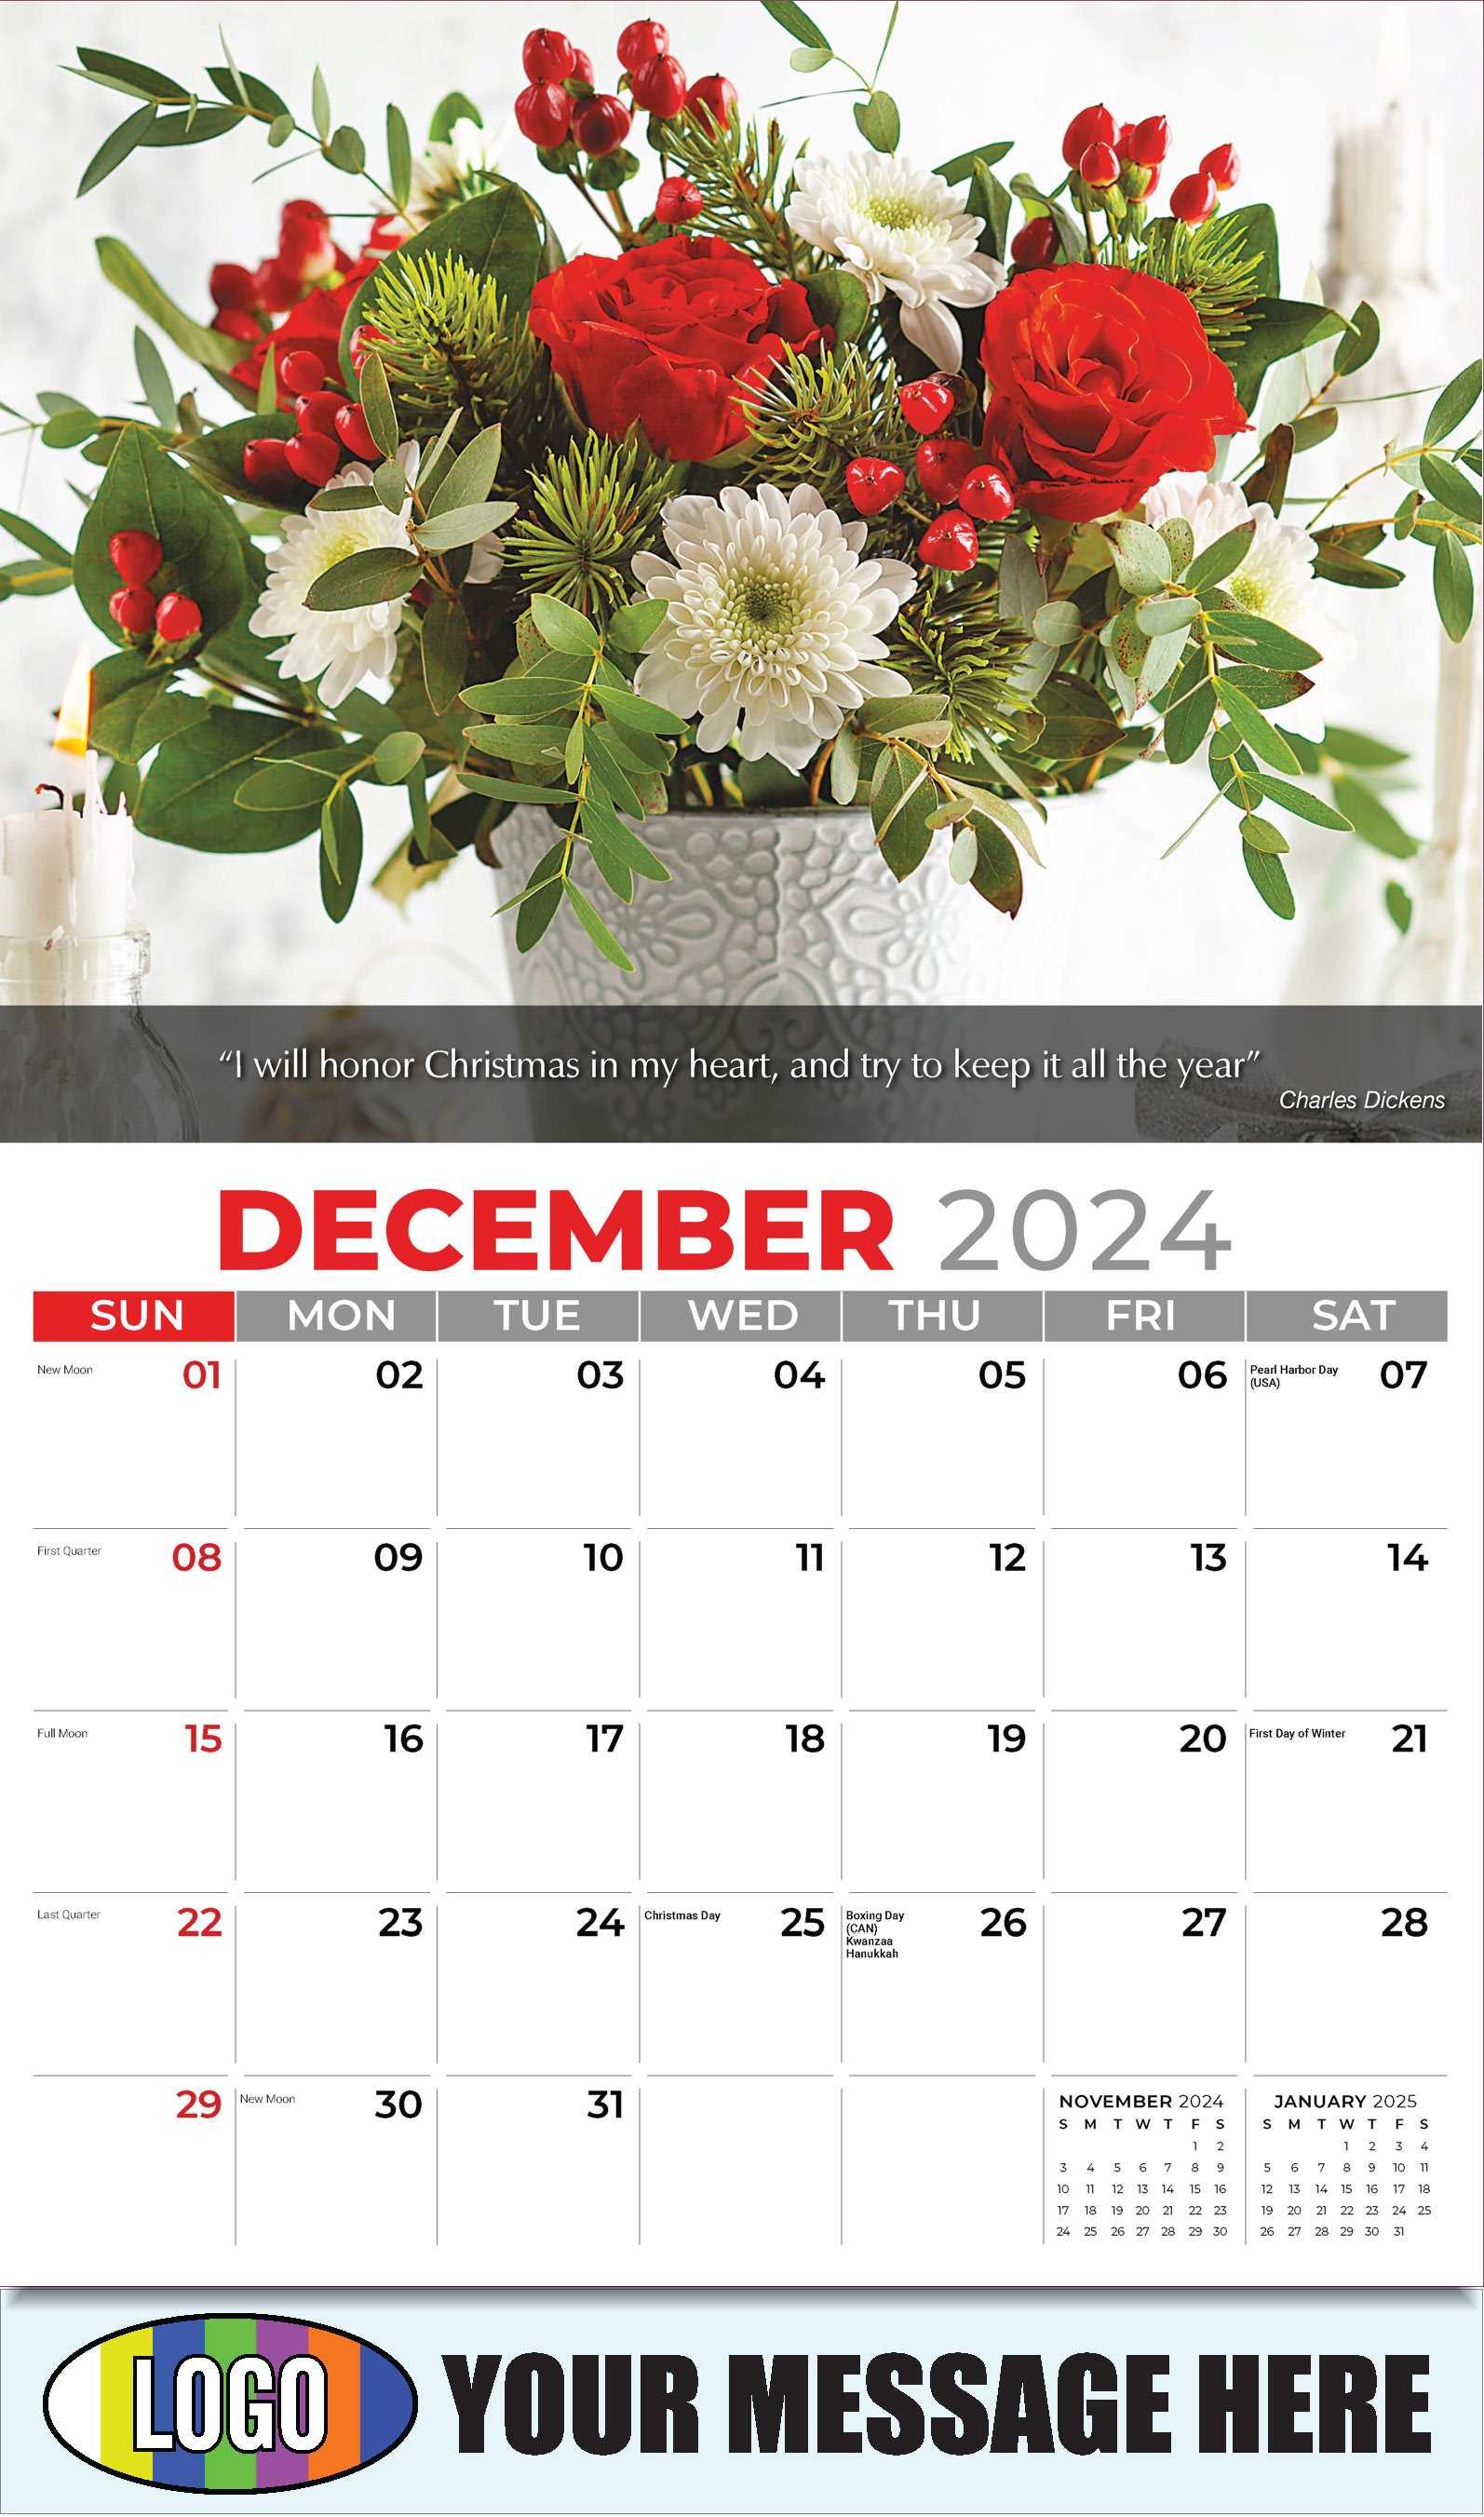 Flowers and Gardens 2025 Business Advertising Calendar - December_a